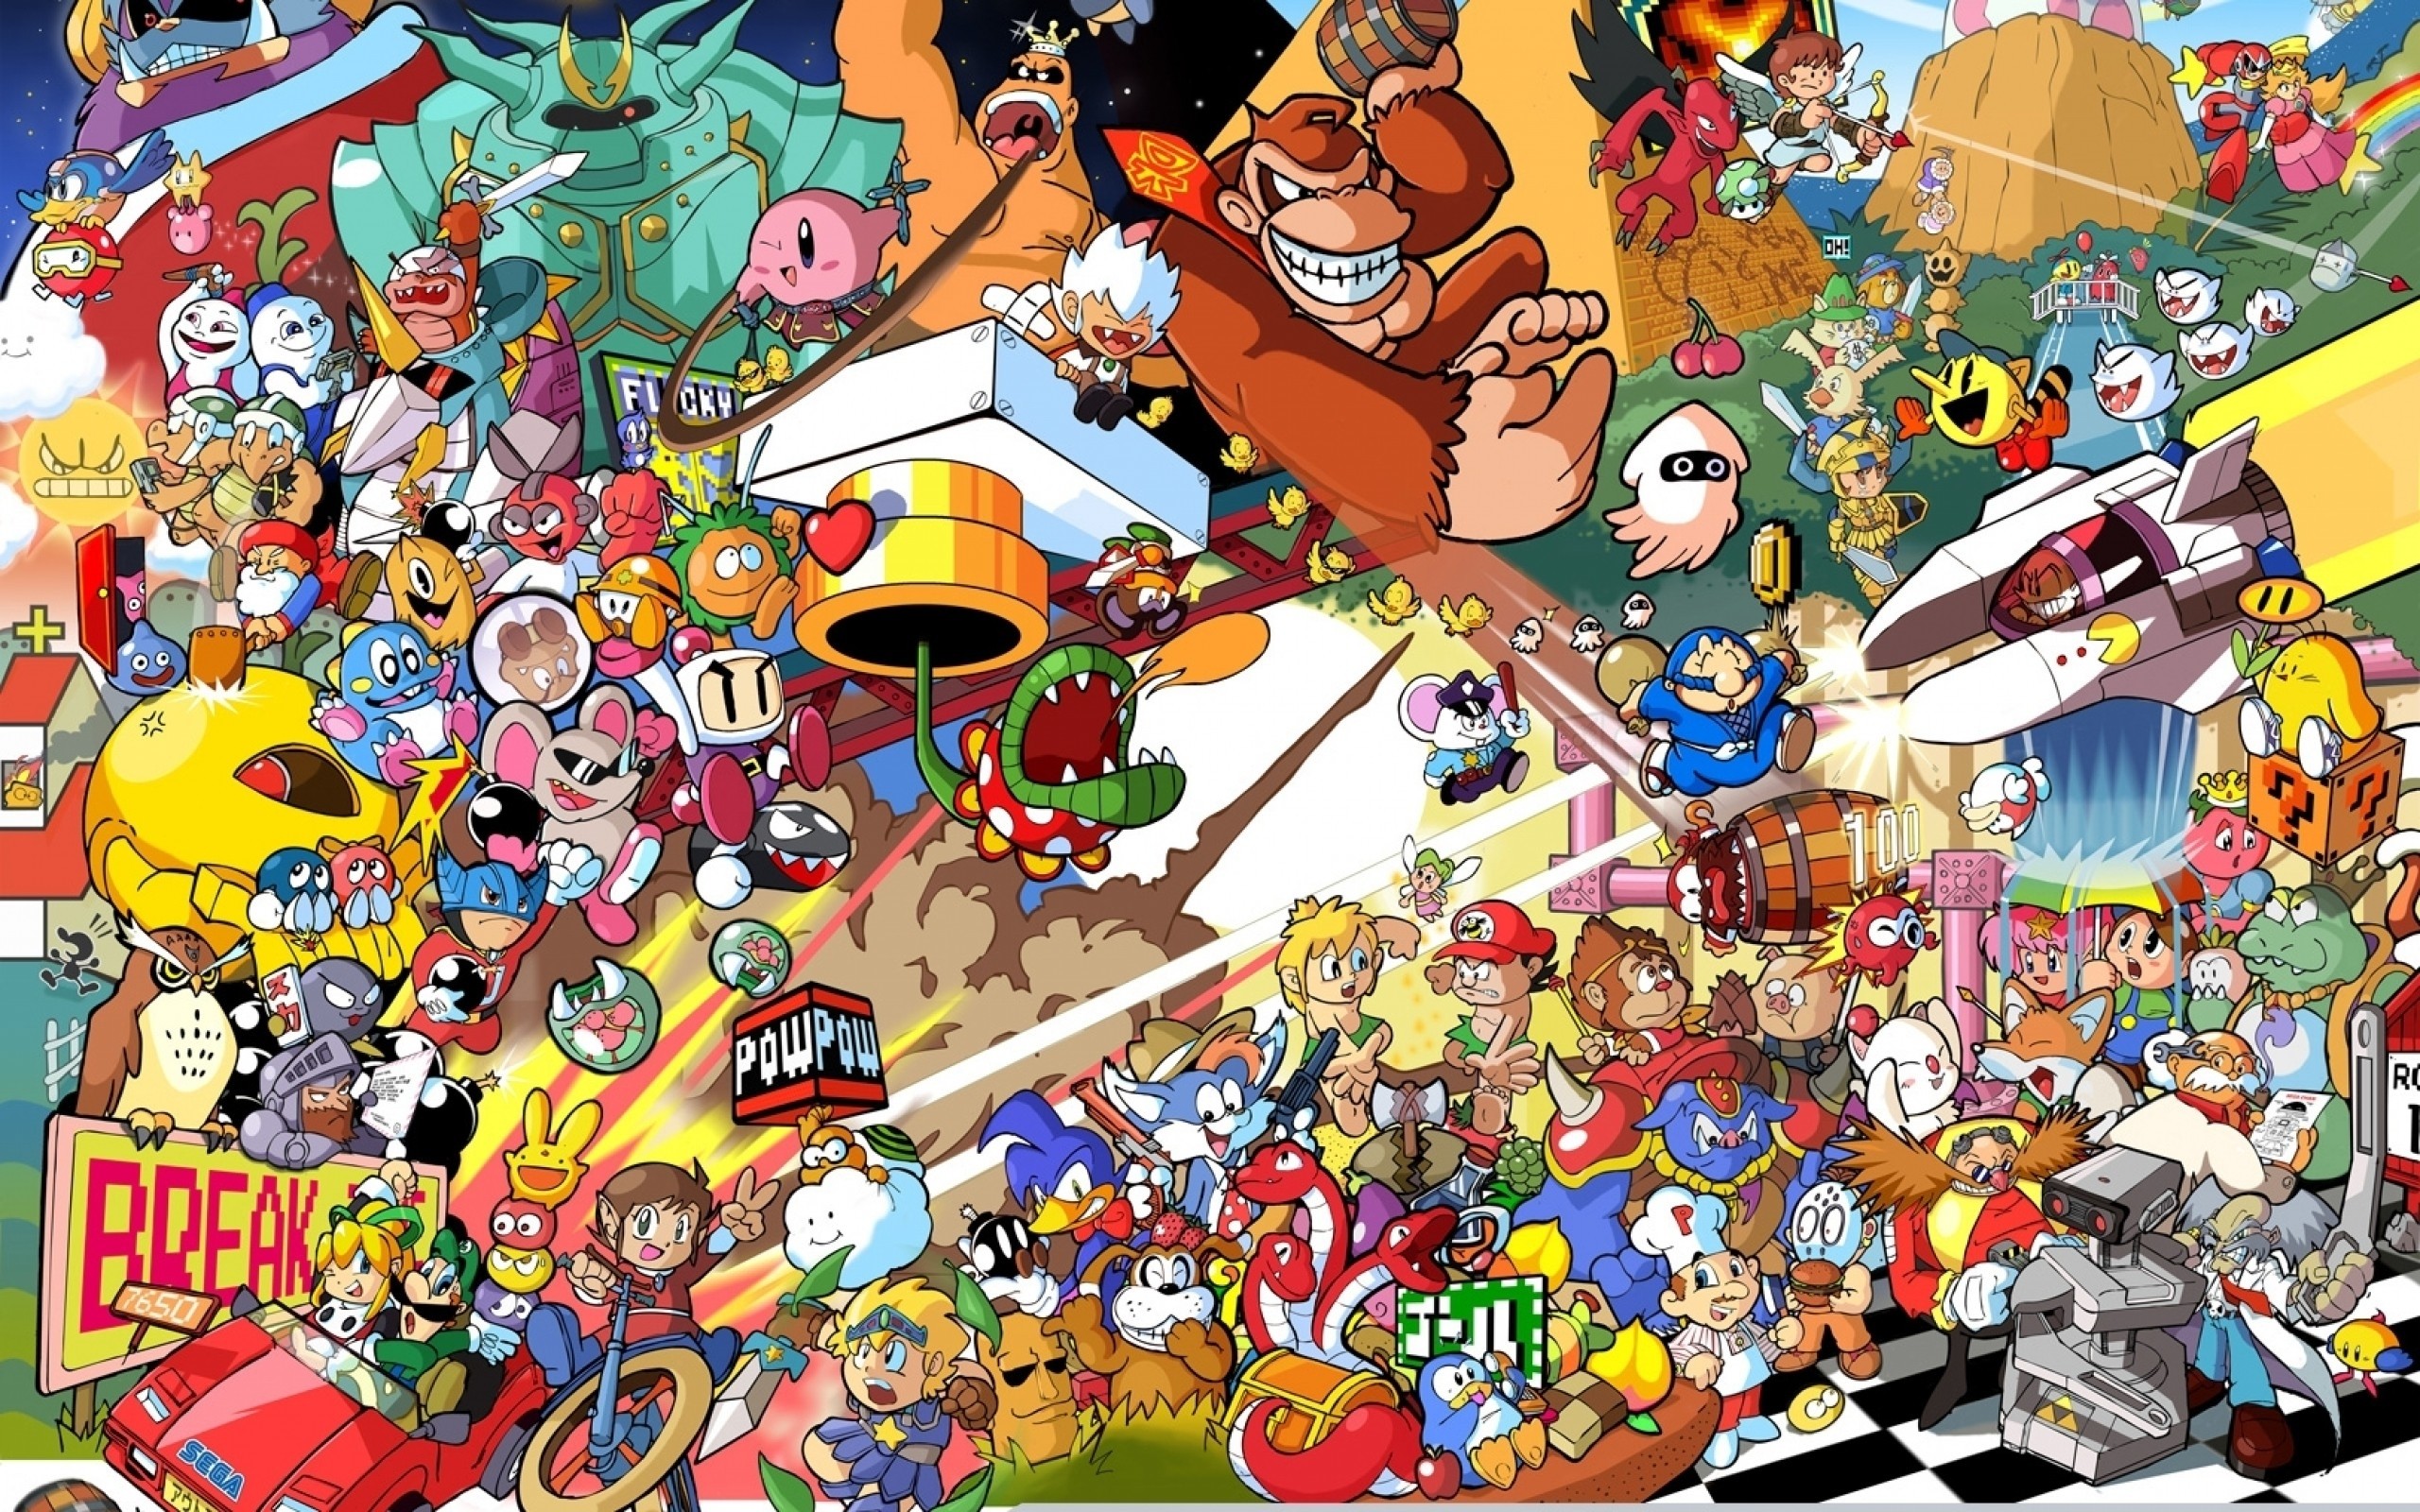 Super Smash Bros HD Wallpaper